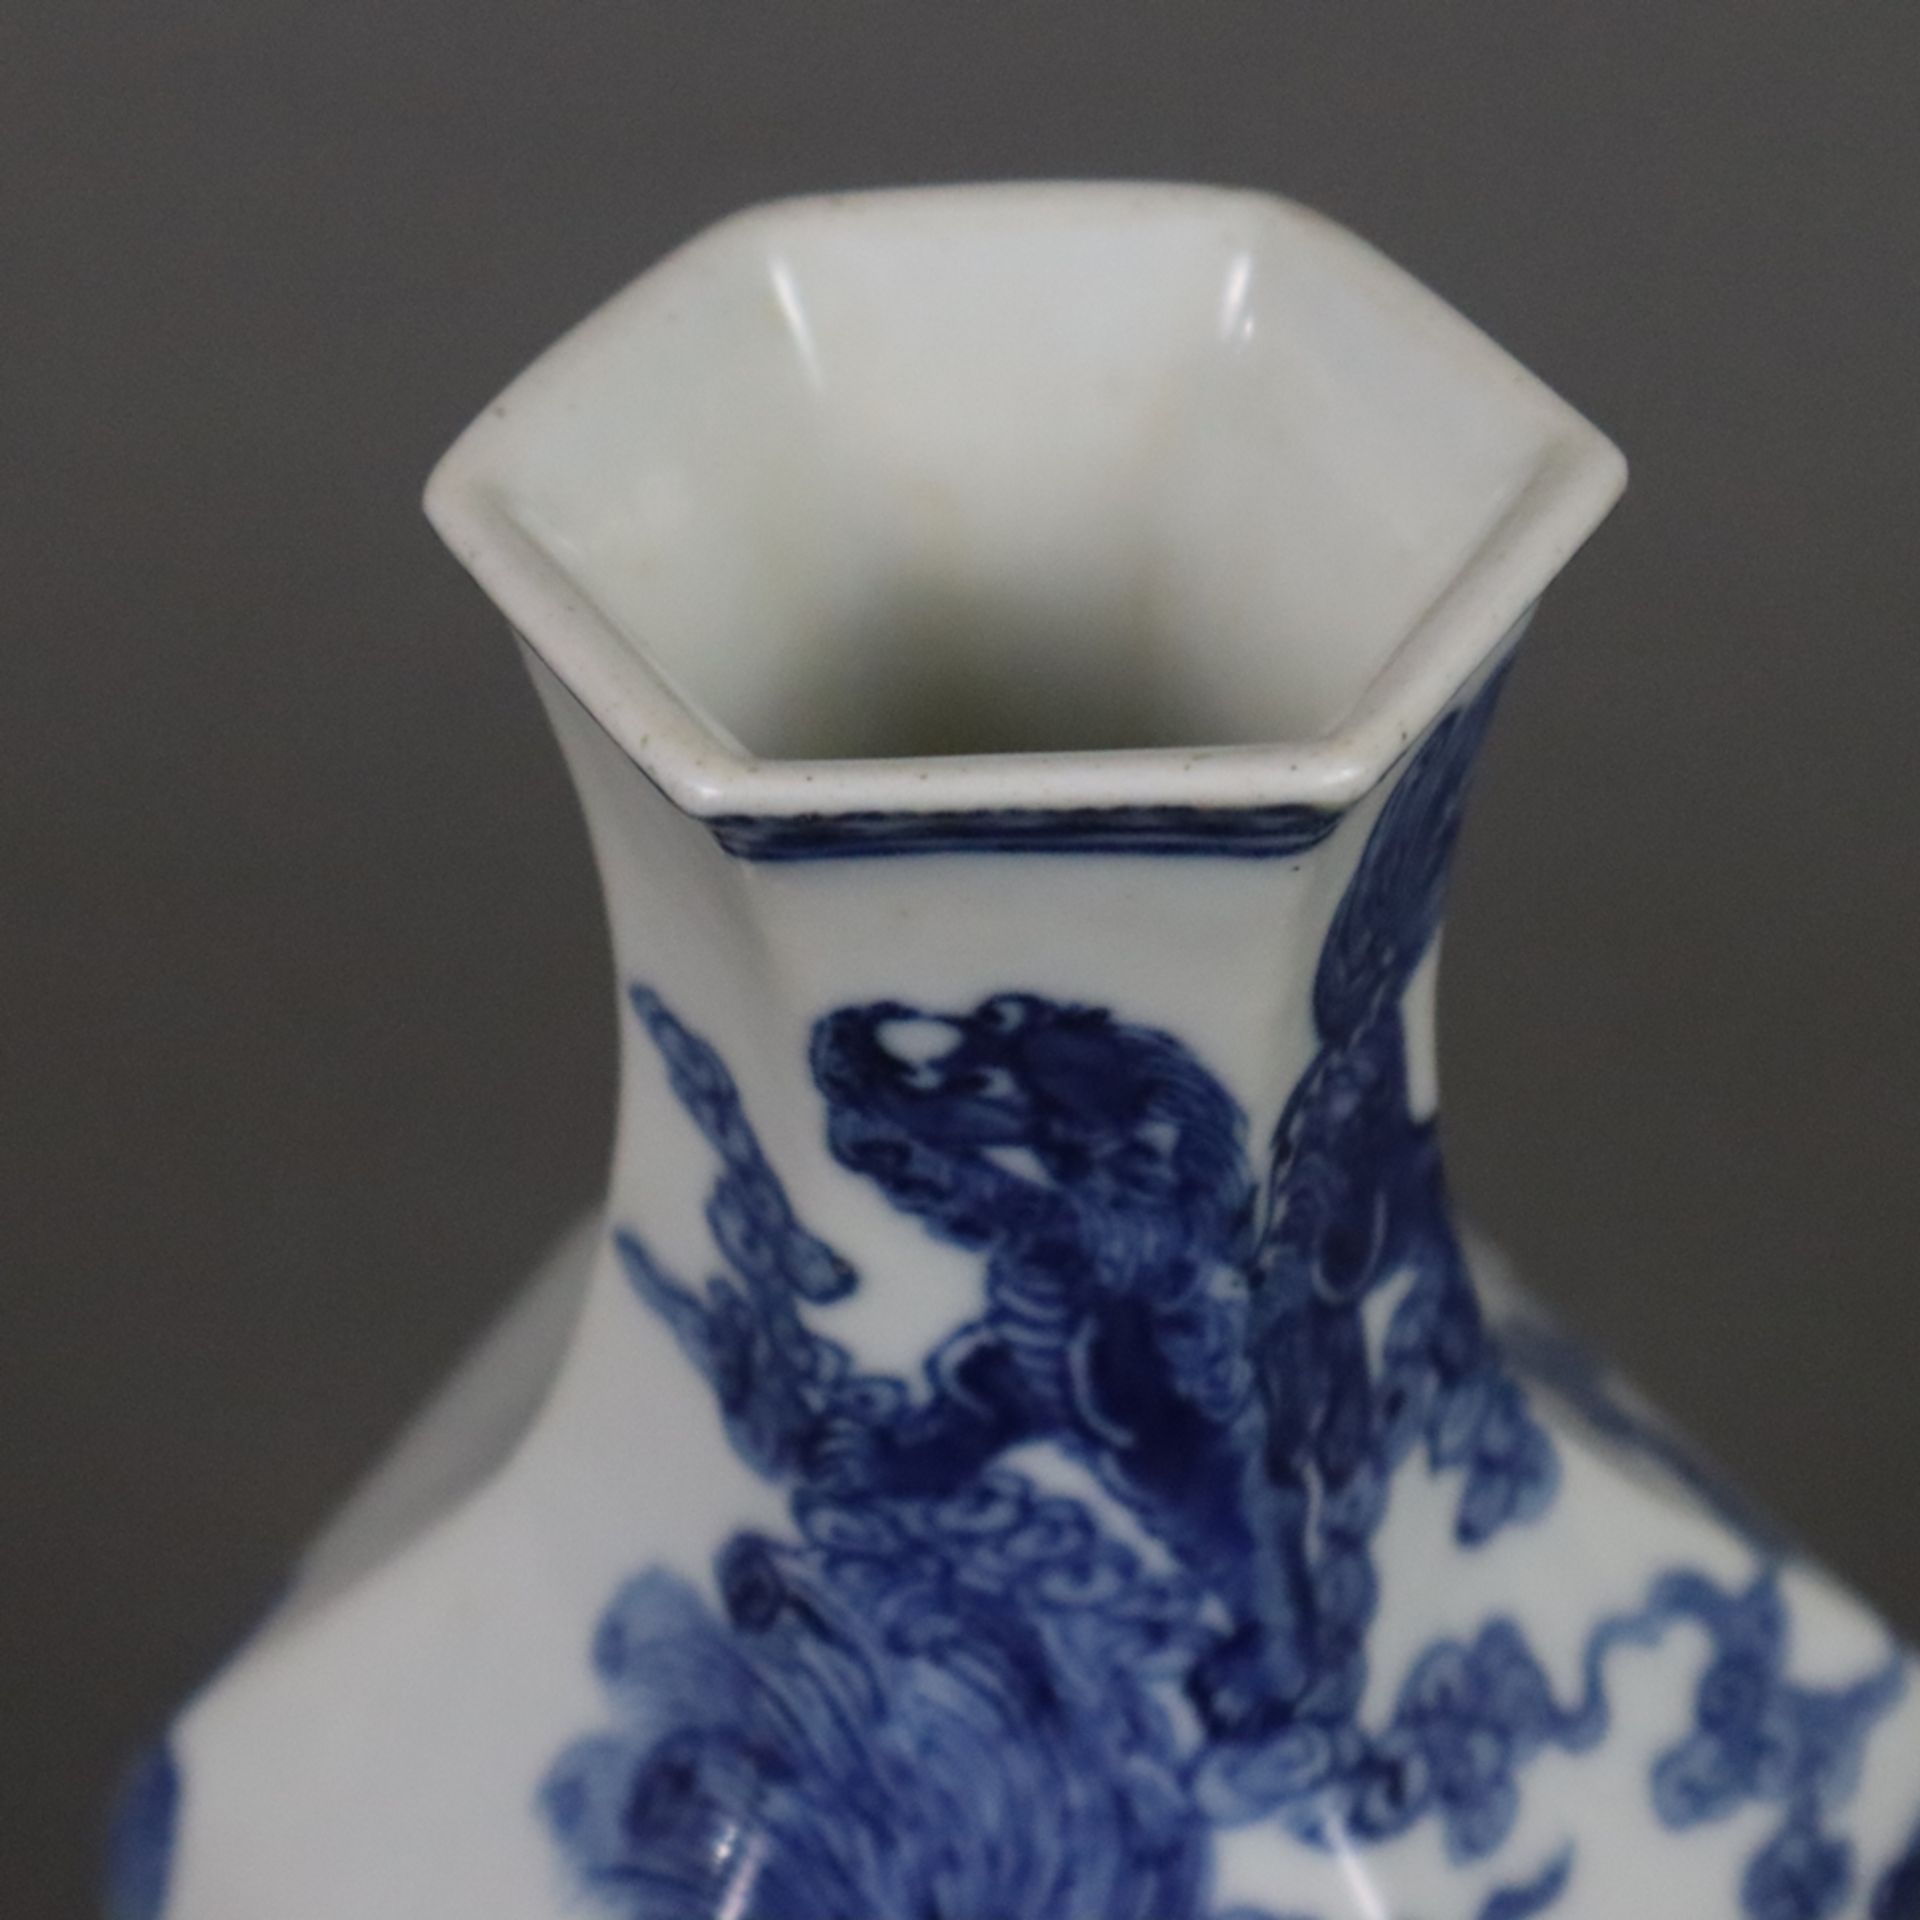 Blau-weiße Vase - Porzellan, gebauchte Balusterform 6-fach gekantet, umlaufend fein gemalter unterg - Bild 2 aus 8